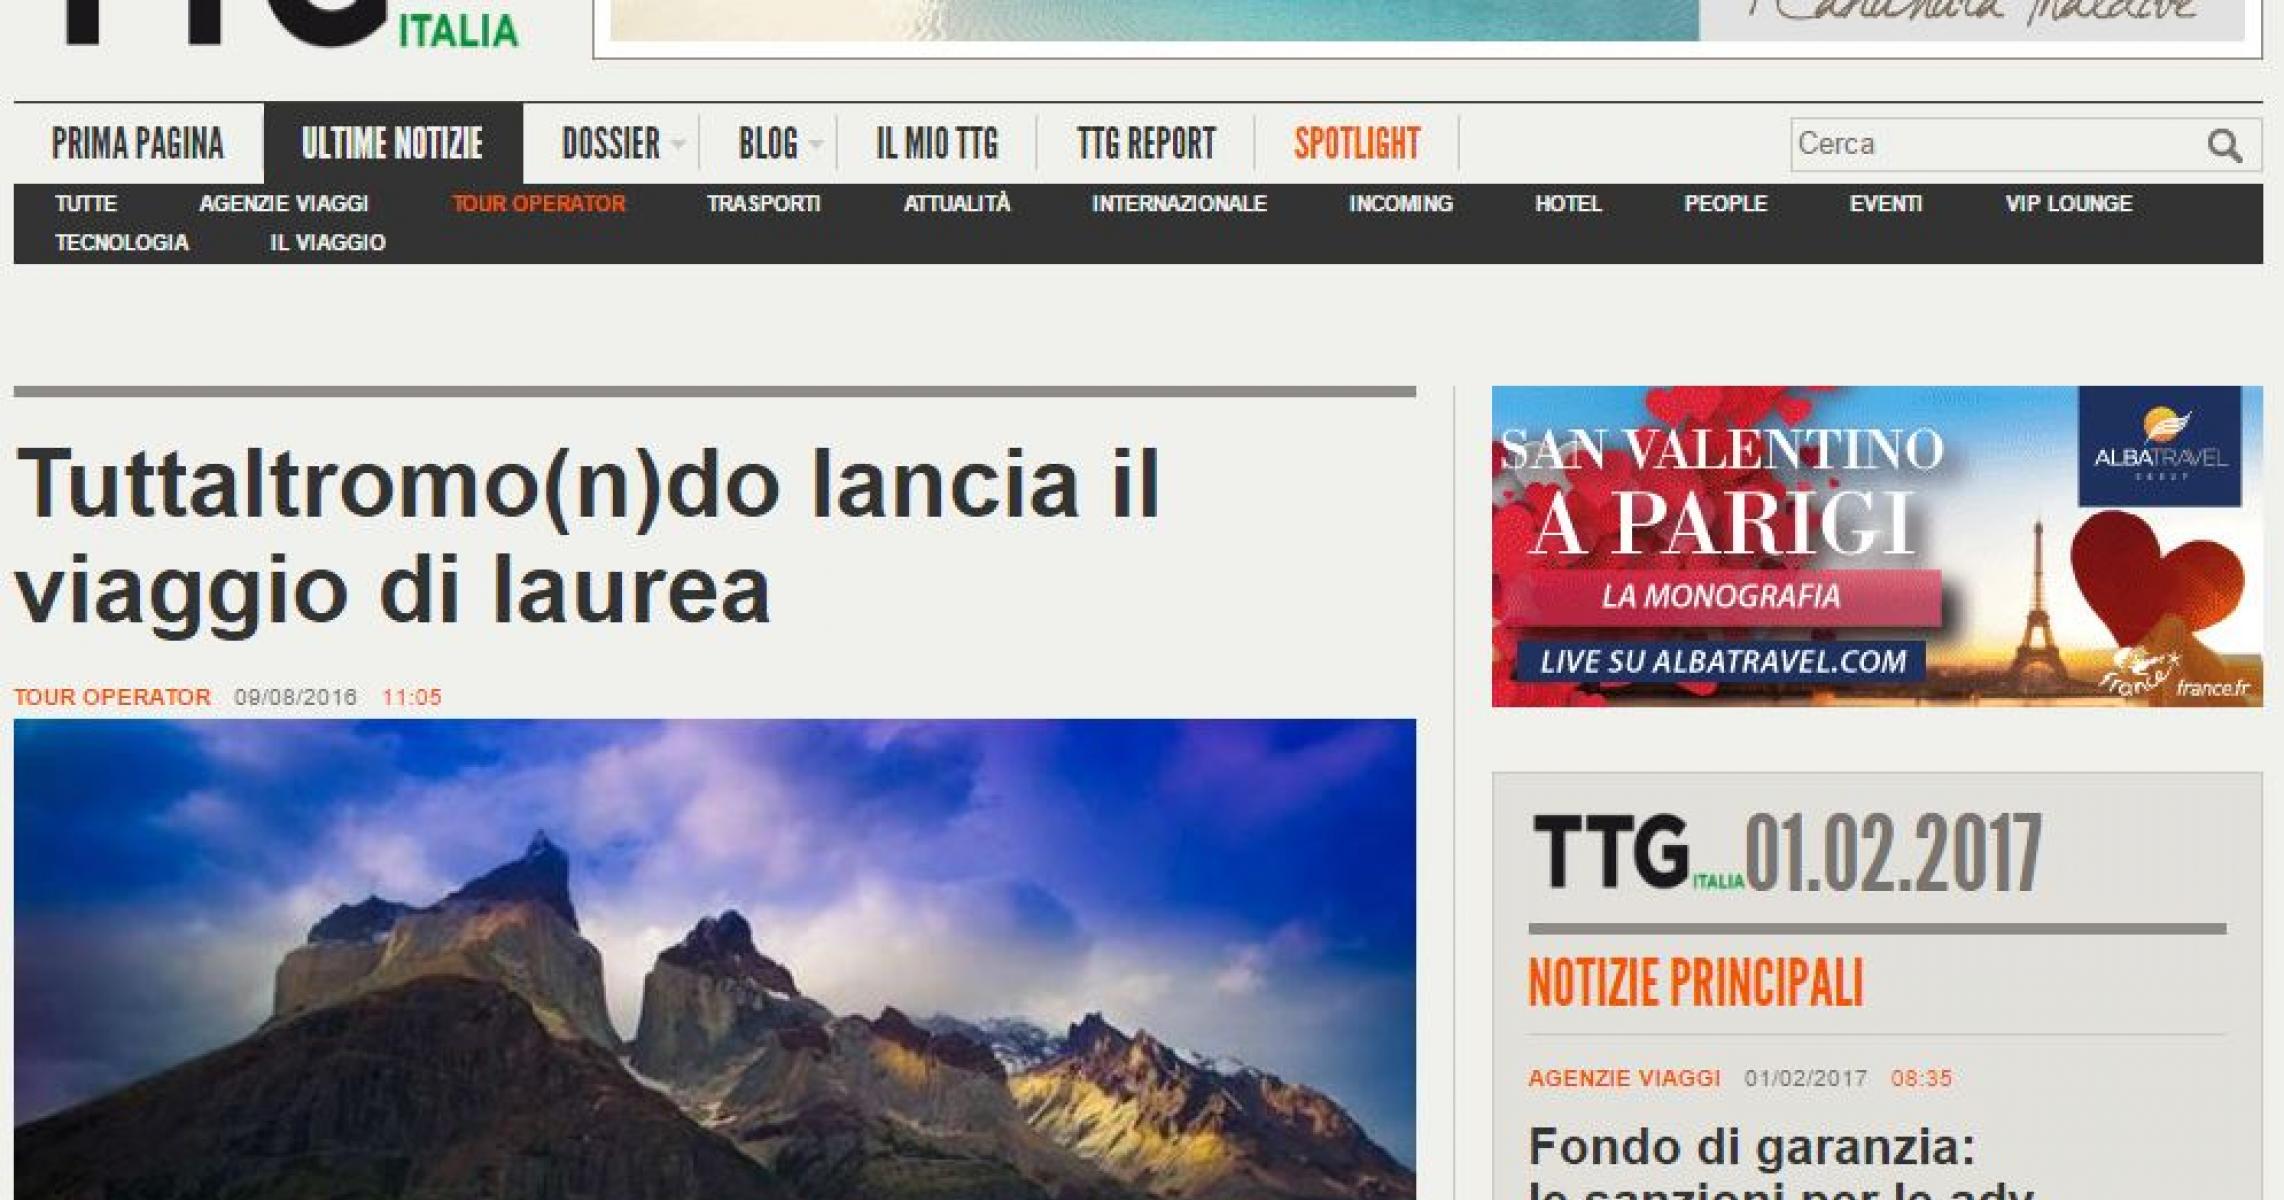 TTG ITALIA: TUTTALTROMO(N)DO LANCIA IL VIAGGIO DI LAUREA